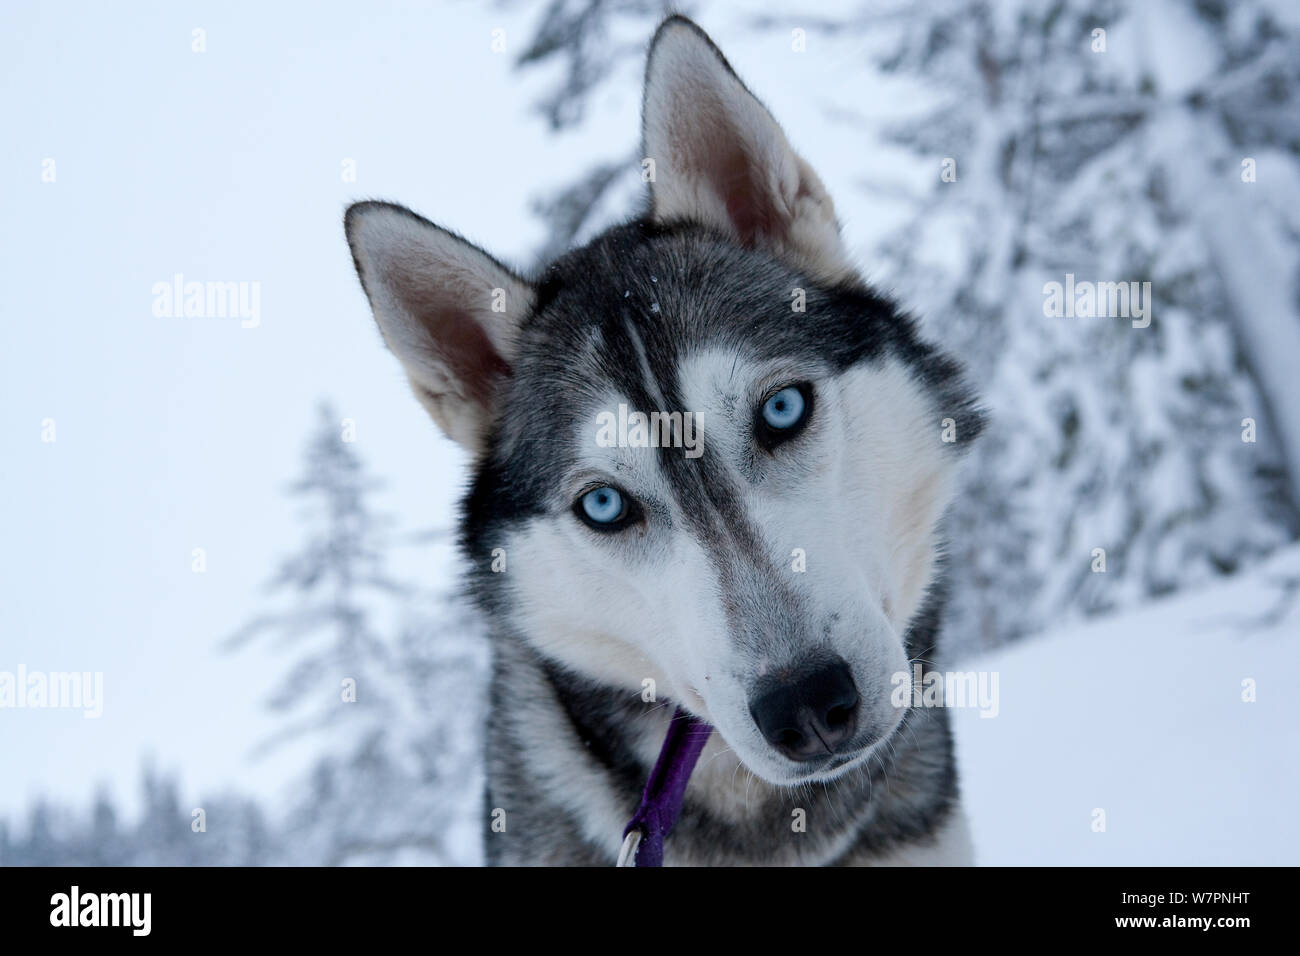 Portrait de chien de traîneau Husky Sibérien, avec tête armé d'un côté, le parc national de Riisitunturi, Laponie, Finlande, Juillet Banque D'Images